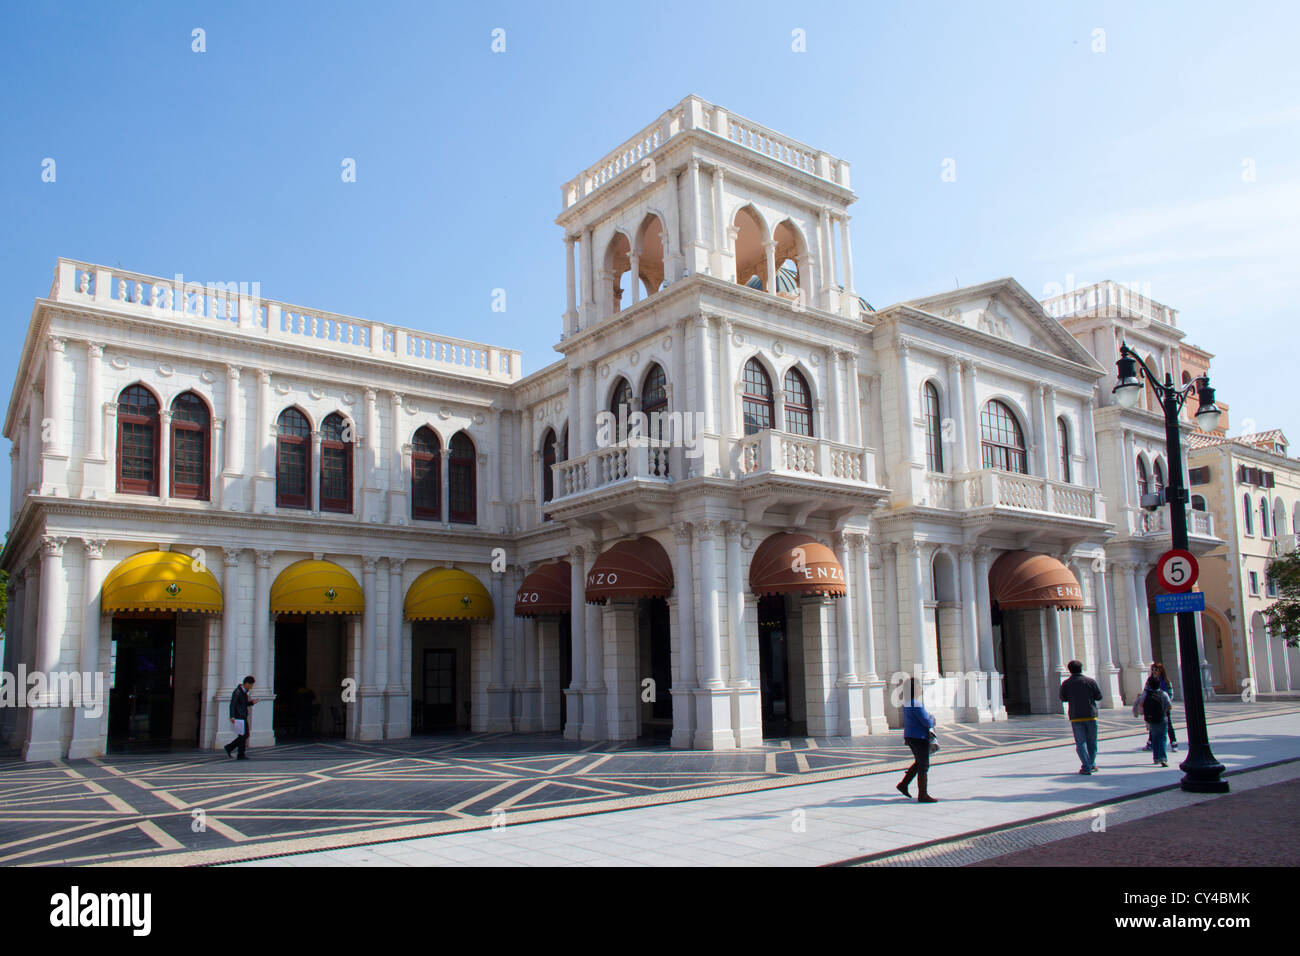 Bâtiments de style colonial portugais à Macao, Chine Banque D'Images